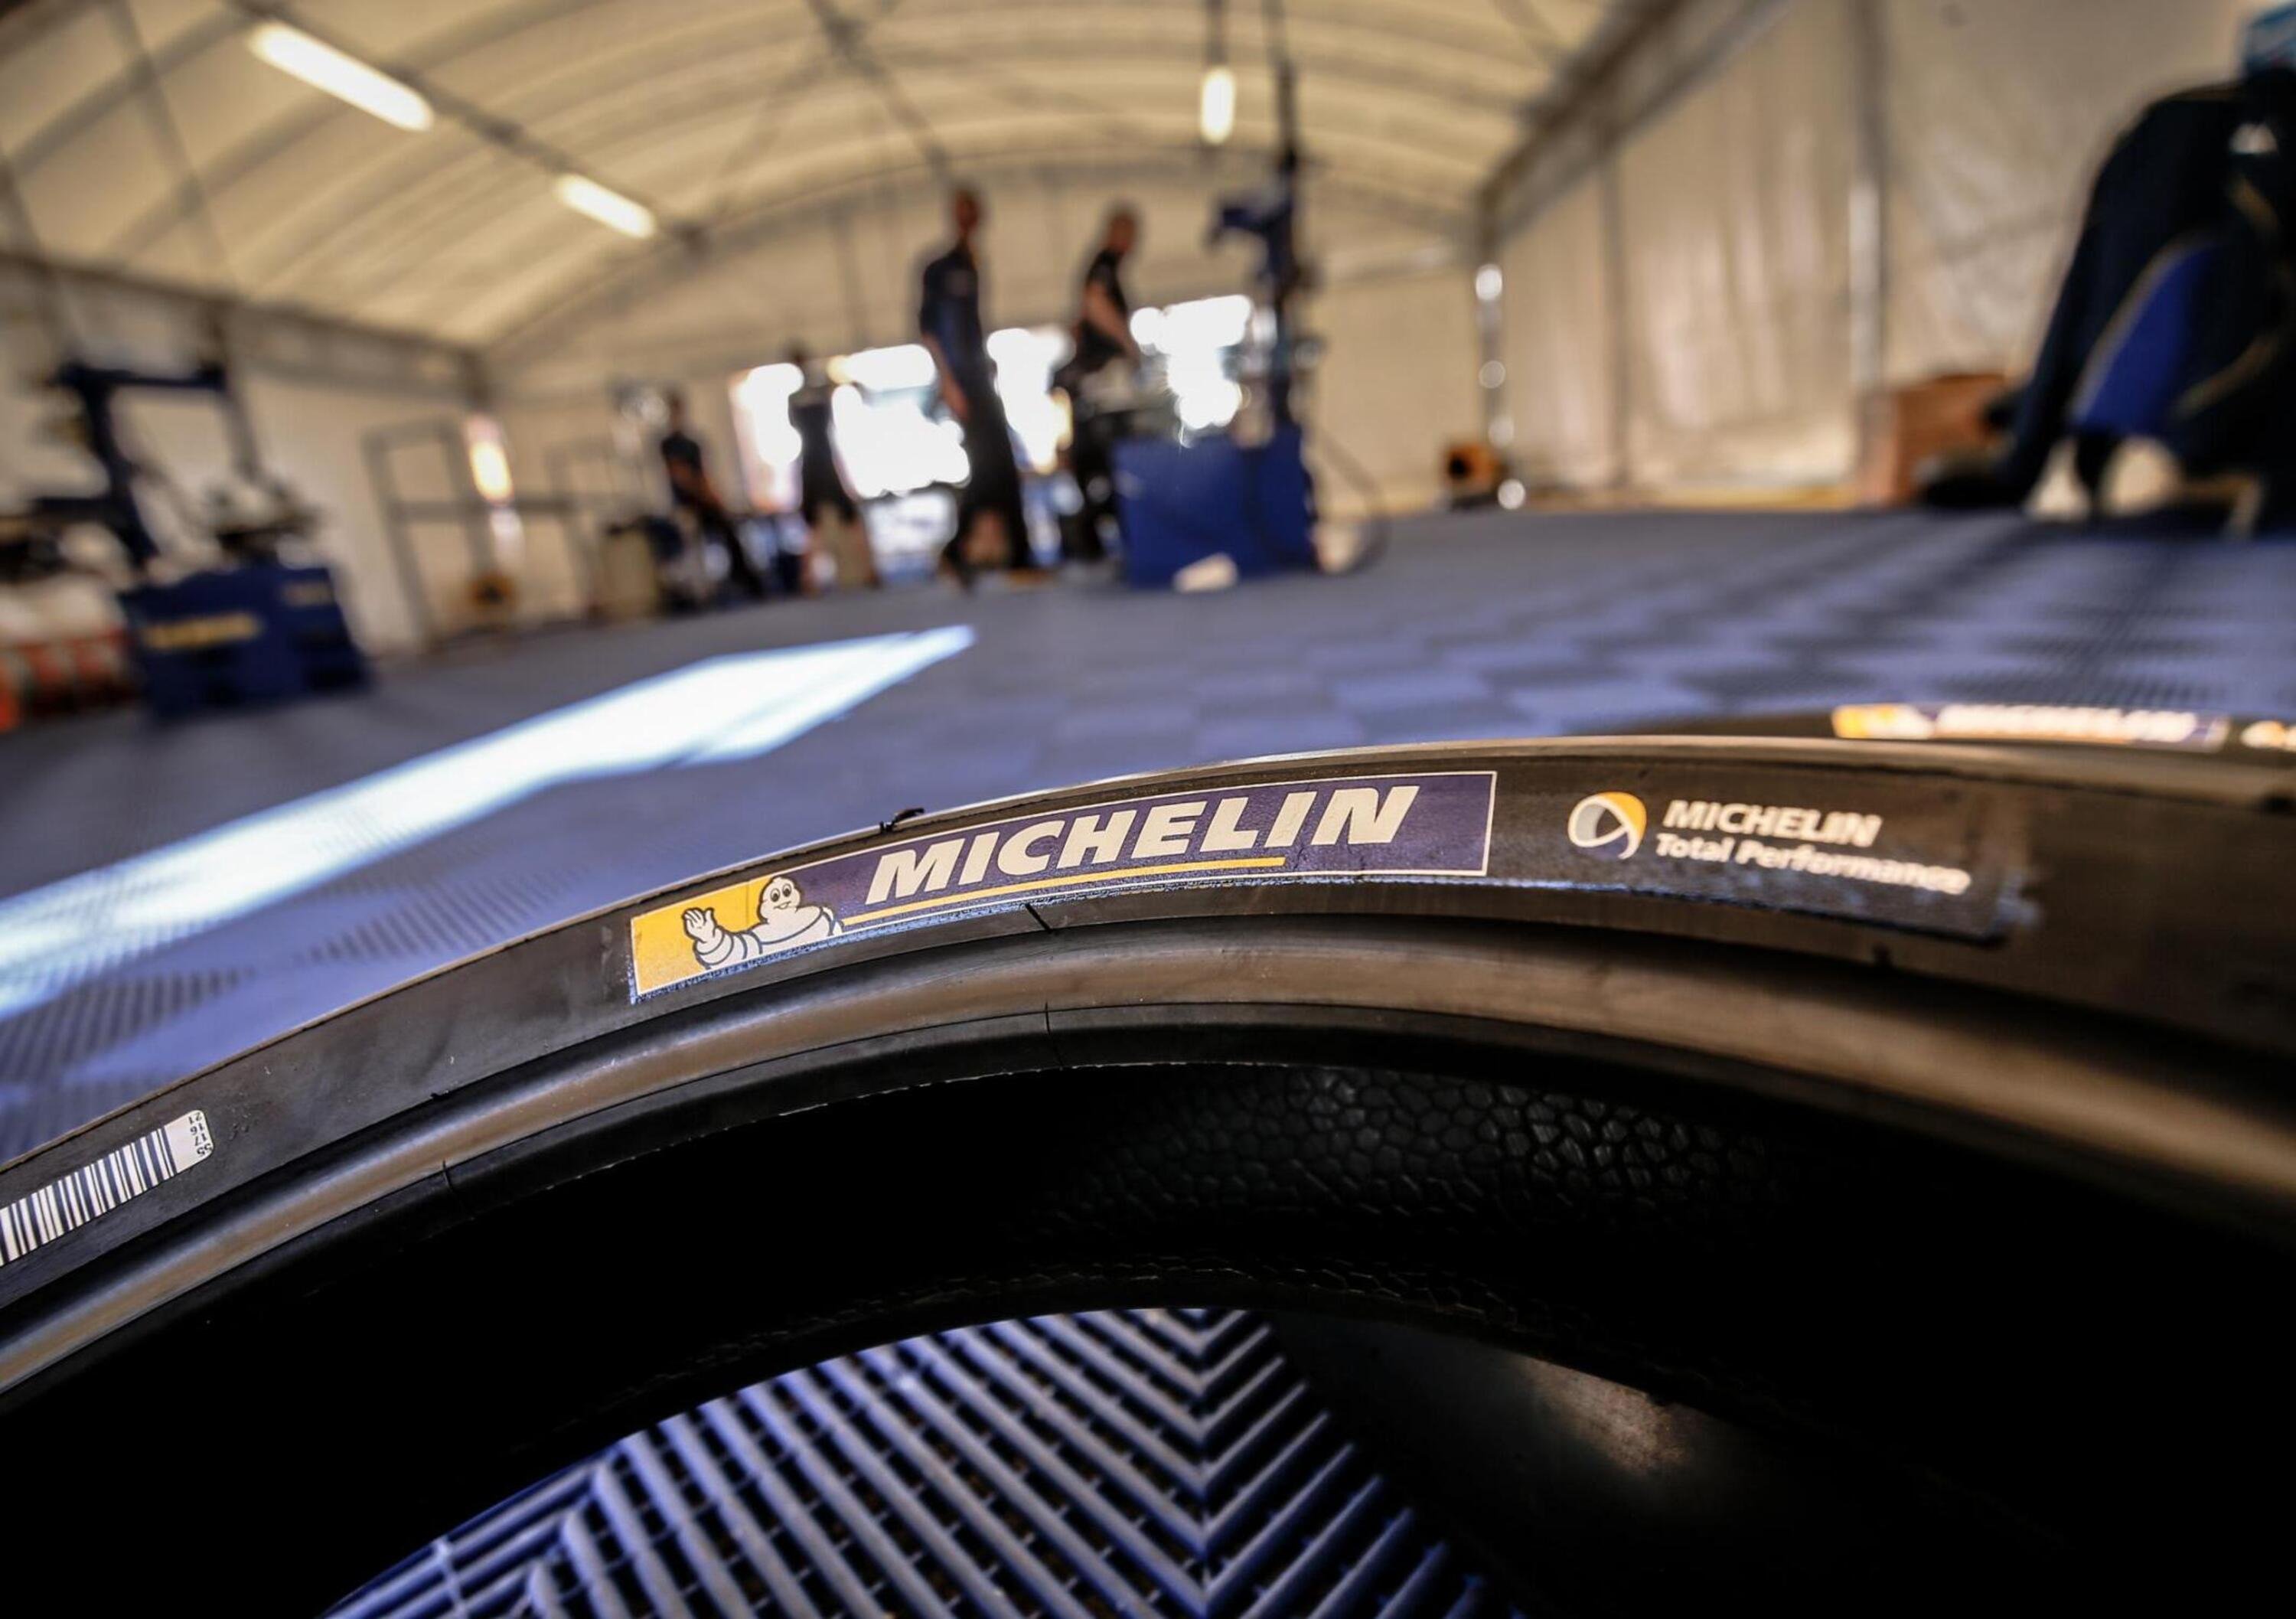 Nico Cereghini: &ldquo;Michelin e Dunlop, &egrave; arrivata l&rsquo;ora di cambiare&rdquo;